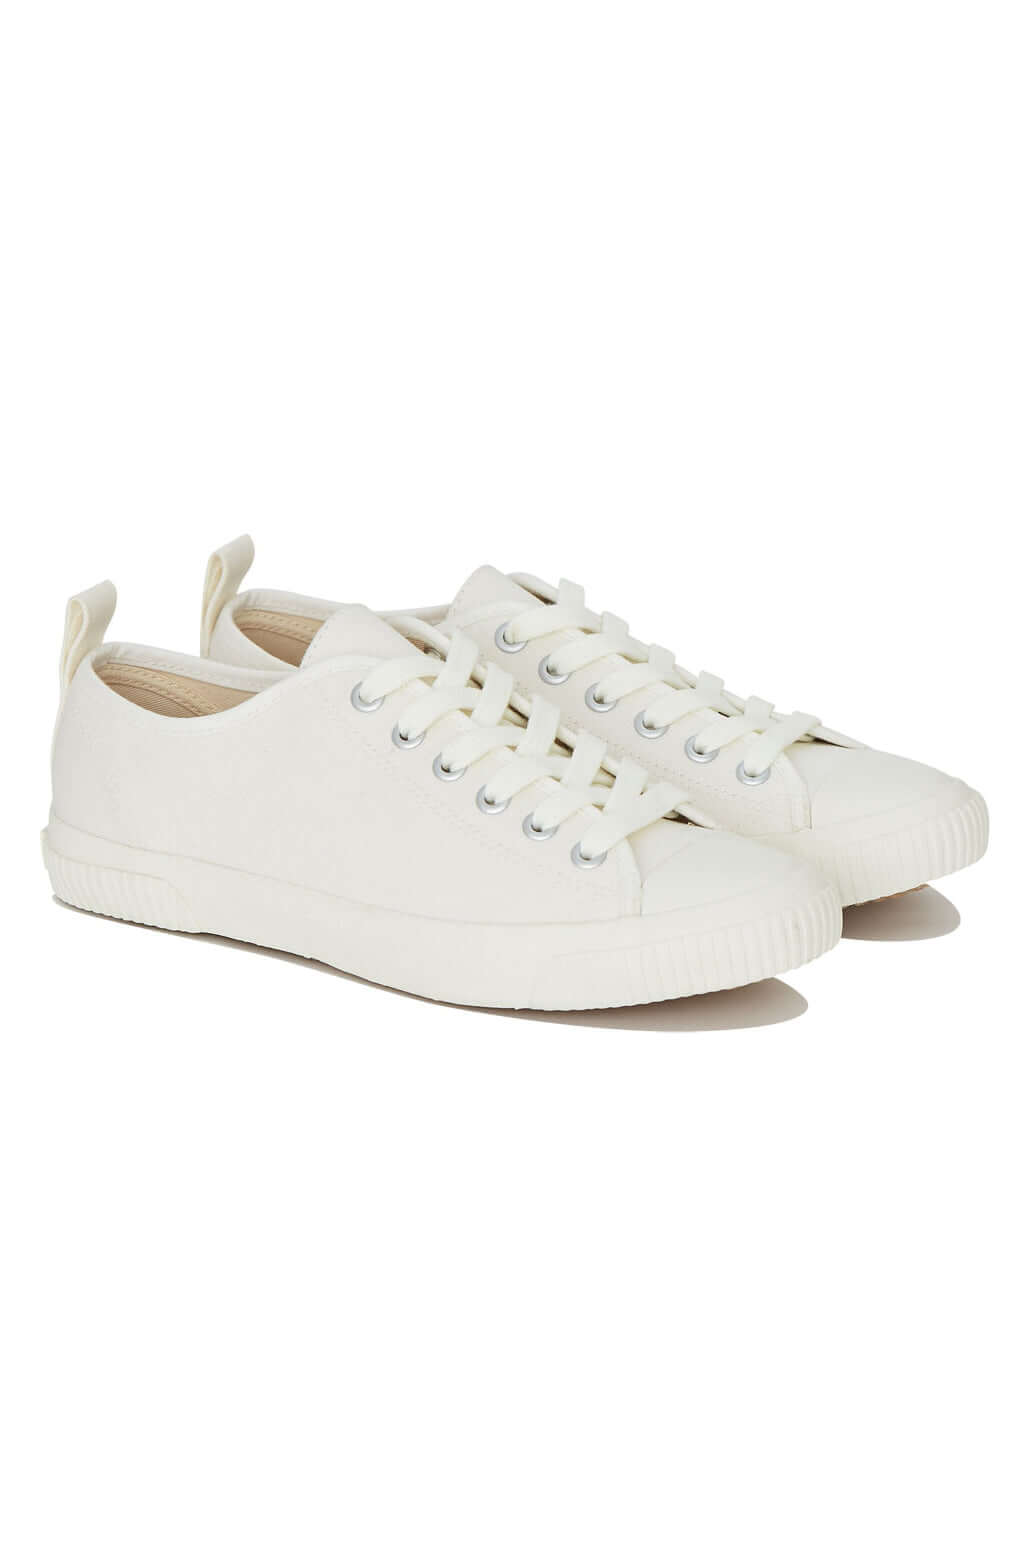 ECO SNEAKO - CLASSIC Womens Shoe White 2.0, EURO 39